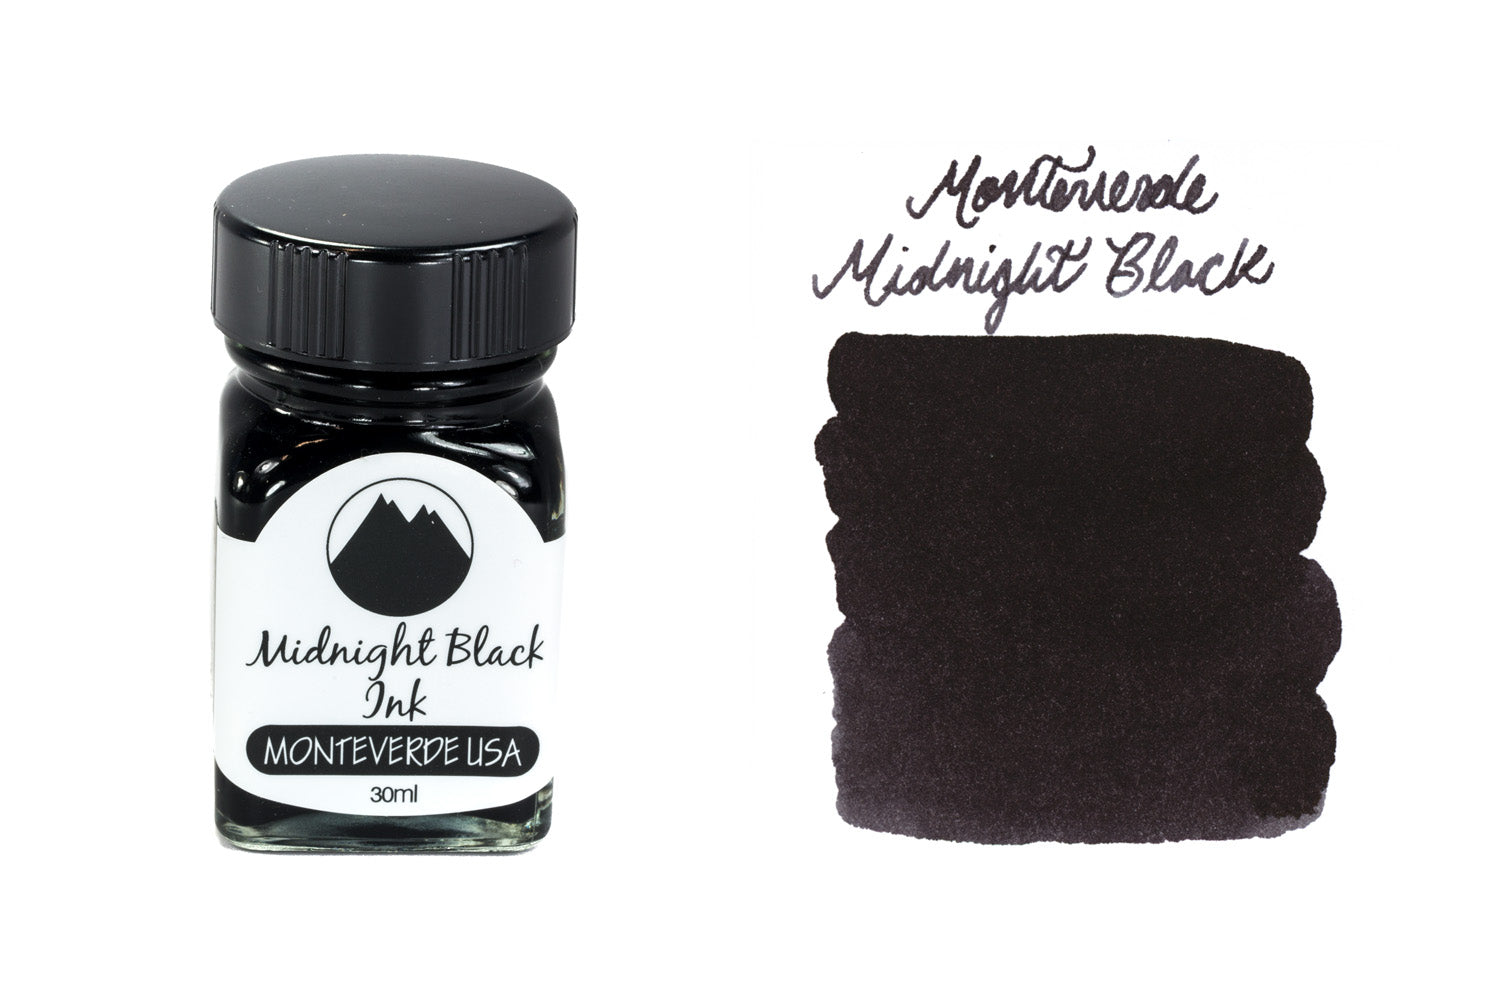 Monteverde USA 90ml Fountain Pen Ink Bottle Midnight Black